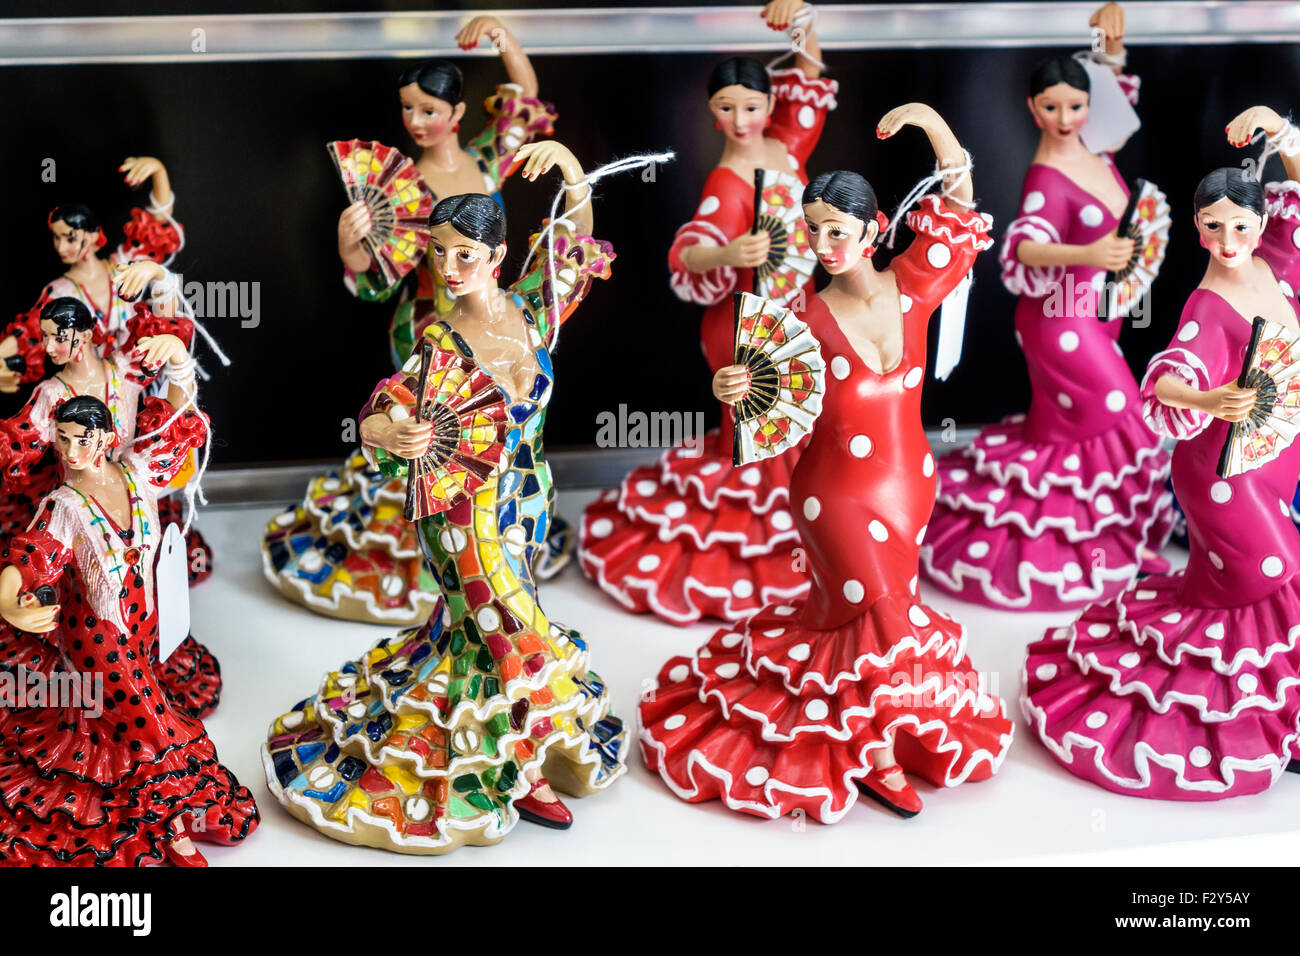 Madrid Spanien, Hispanic Centro, Calle Gran Via, Souvenirs, Souvenirladen, Figurine, Flamencotänzer, Traje de flamenca, Kleid, Polka dot, Verkaufskoffer anzeigen, Spanien1507 Stockfoto